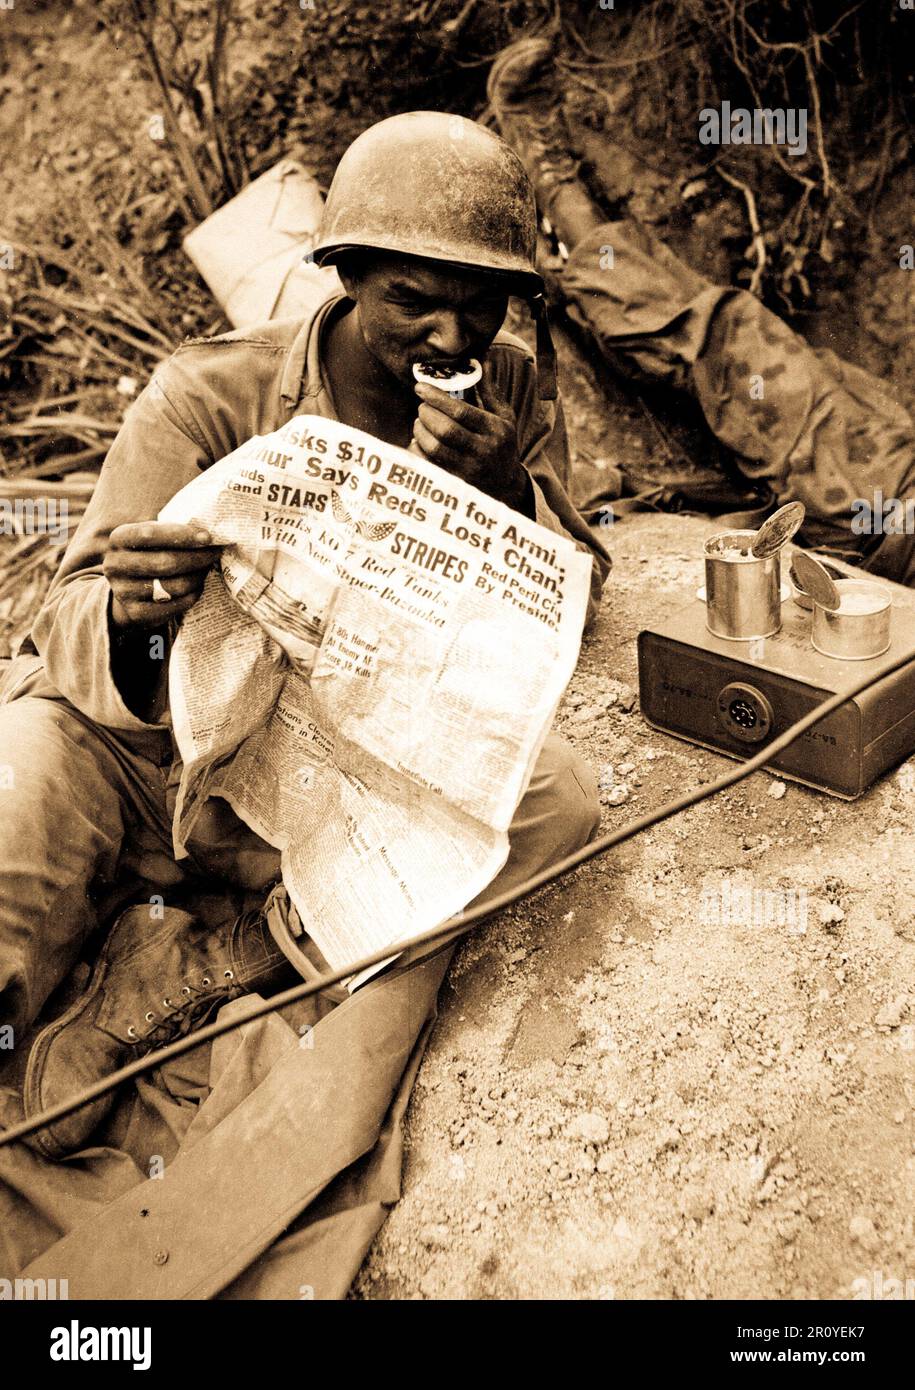 Pfc. Clarence Whitmore, voce operatore radio, xxiv Reggimento di Fanteria, legge le ultime notizie mentre godendo di chow durante il lull in battaglia, vicino Sangju, Corea. Il 9 agosto 1950. Foto di PFC. Charles Fabiszak, Esercito. (USIA) Foto Stock